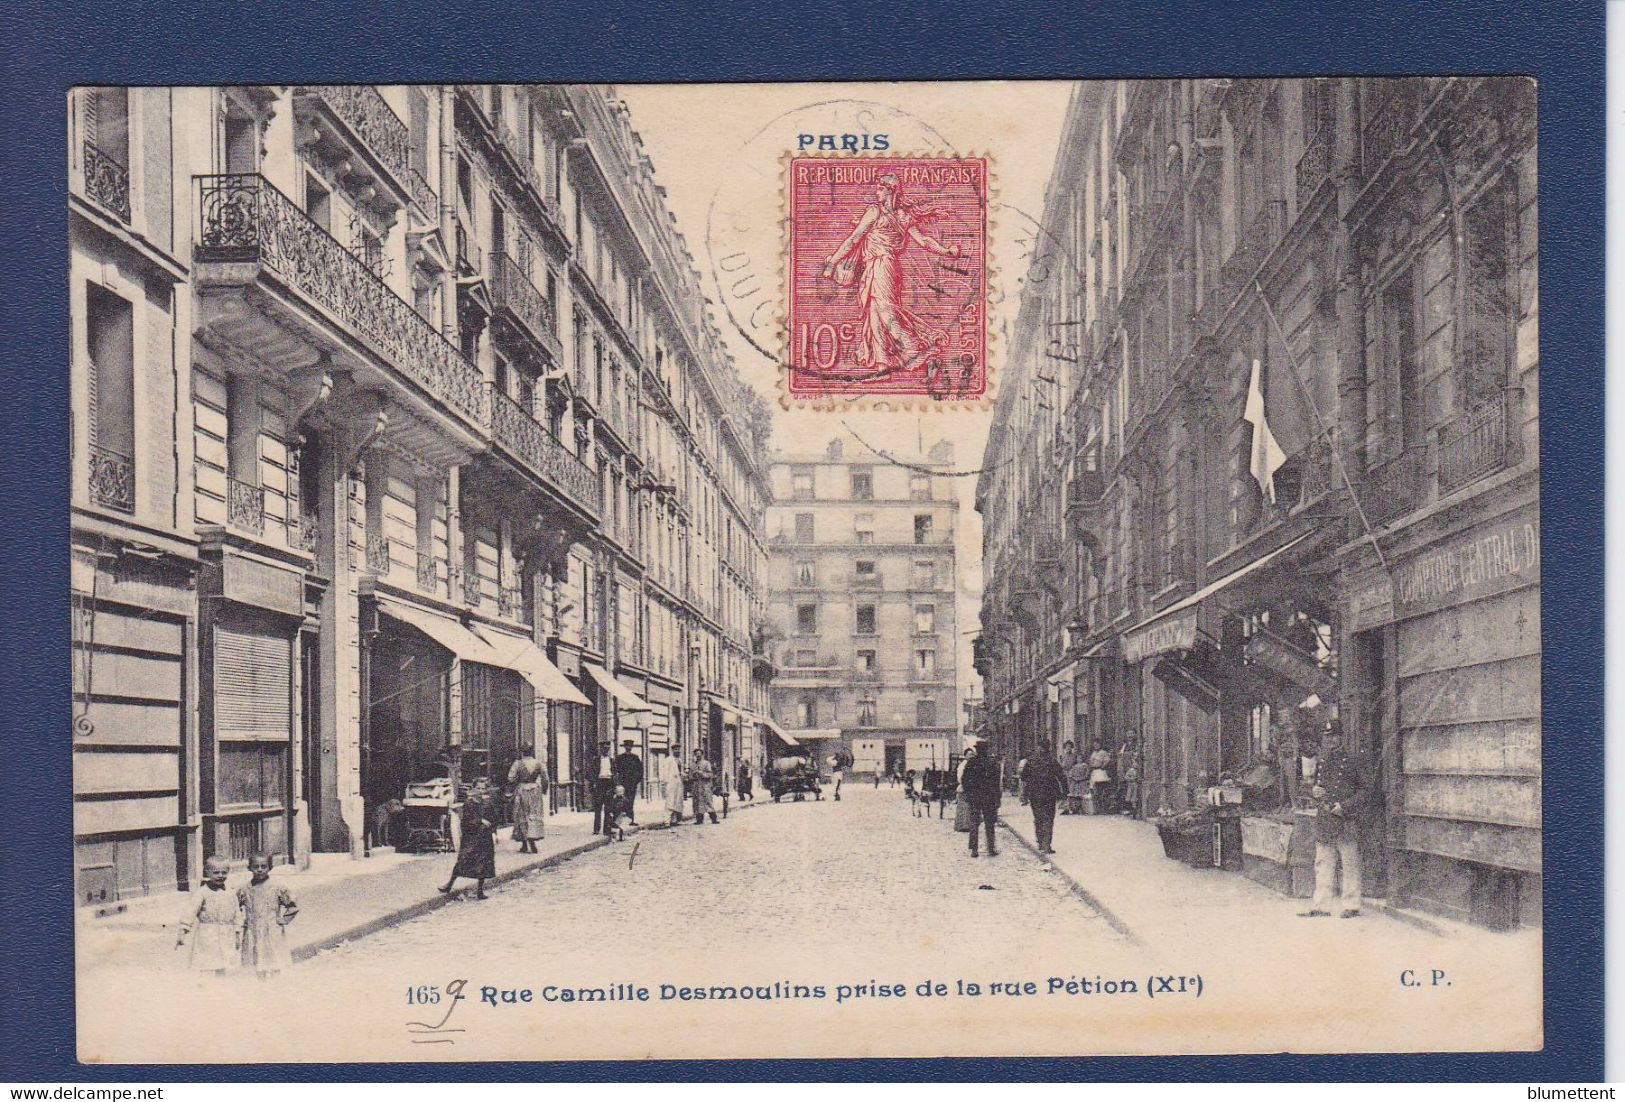 CPA [75] Paris éditeur Comptoir Parisien 11e Arrondissement Commerces Animation Circulé - Distrito: 11